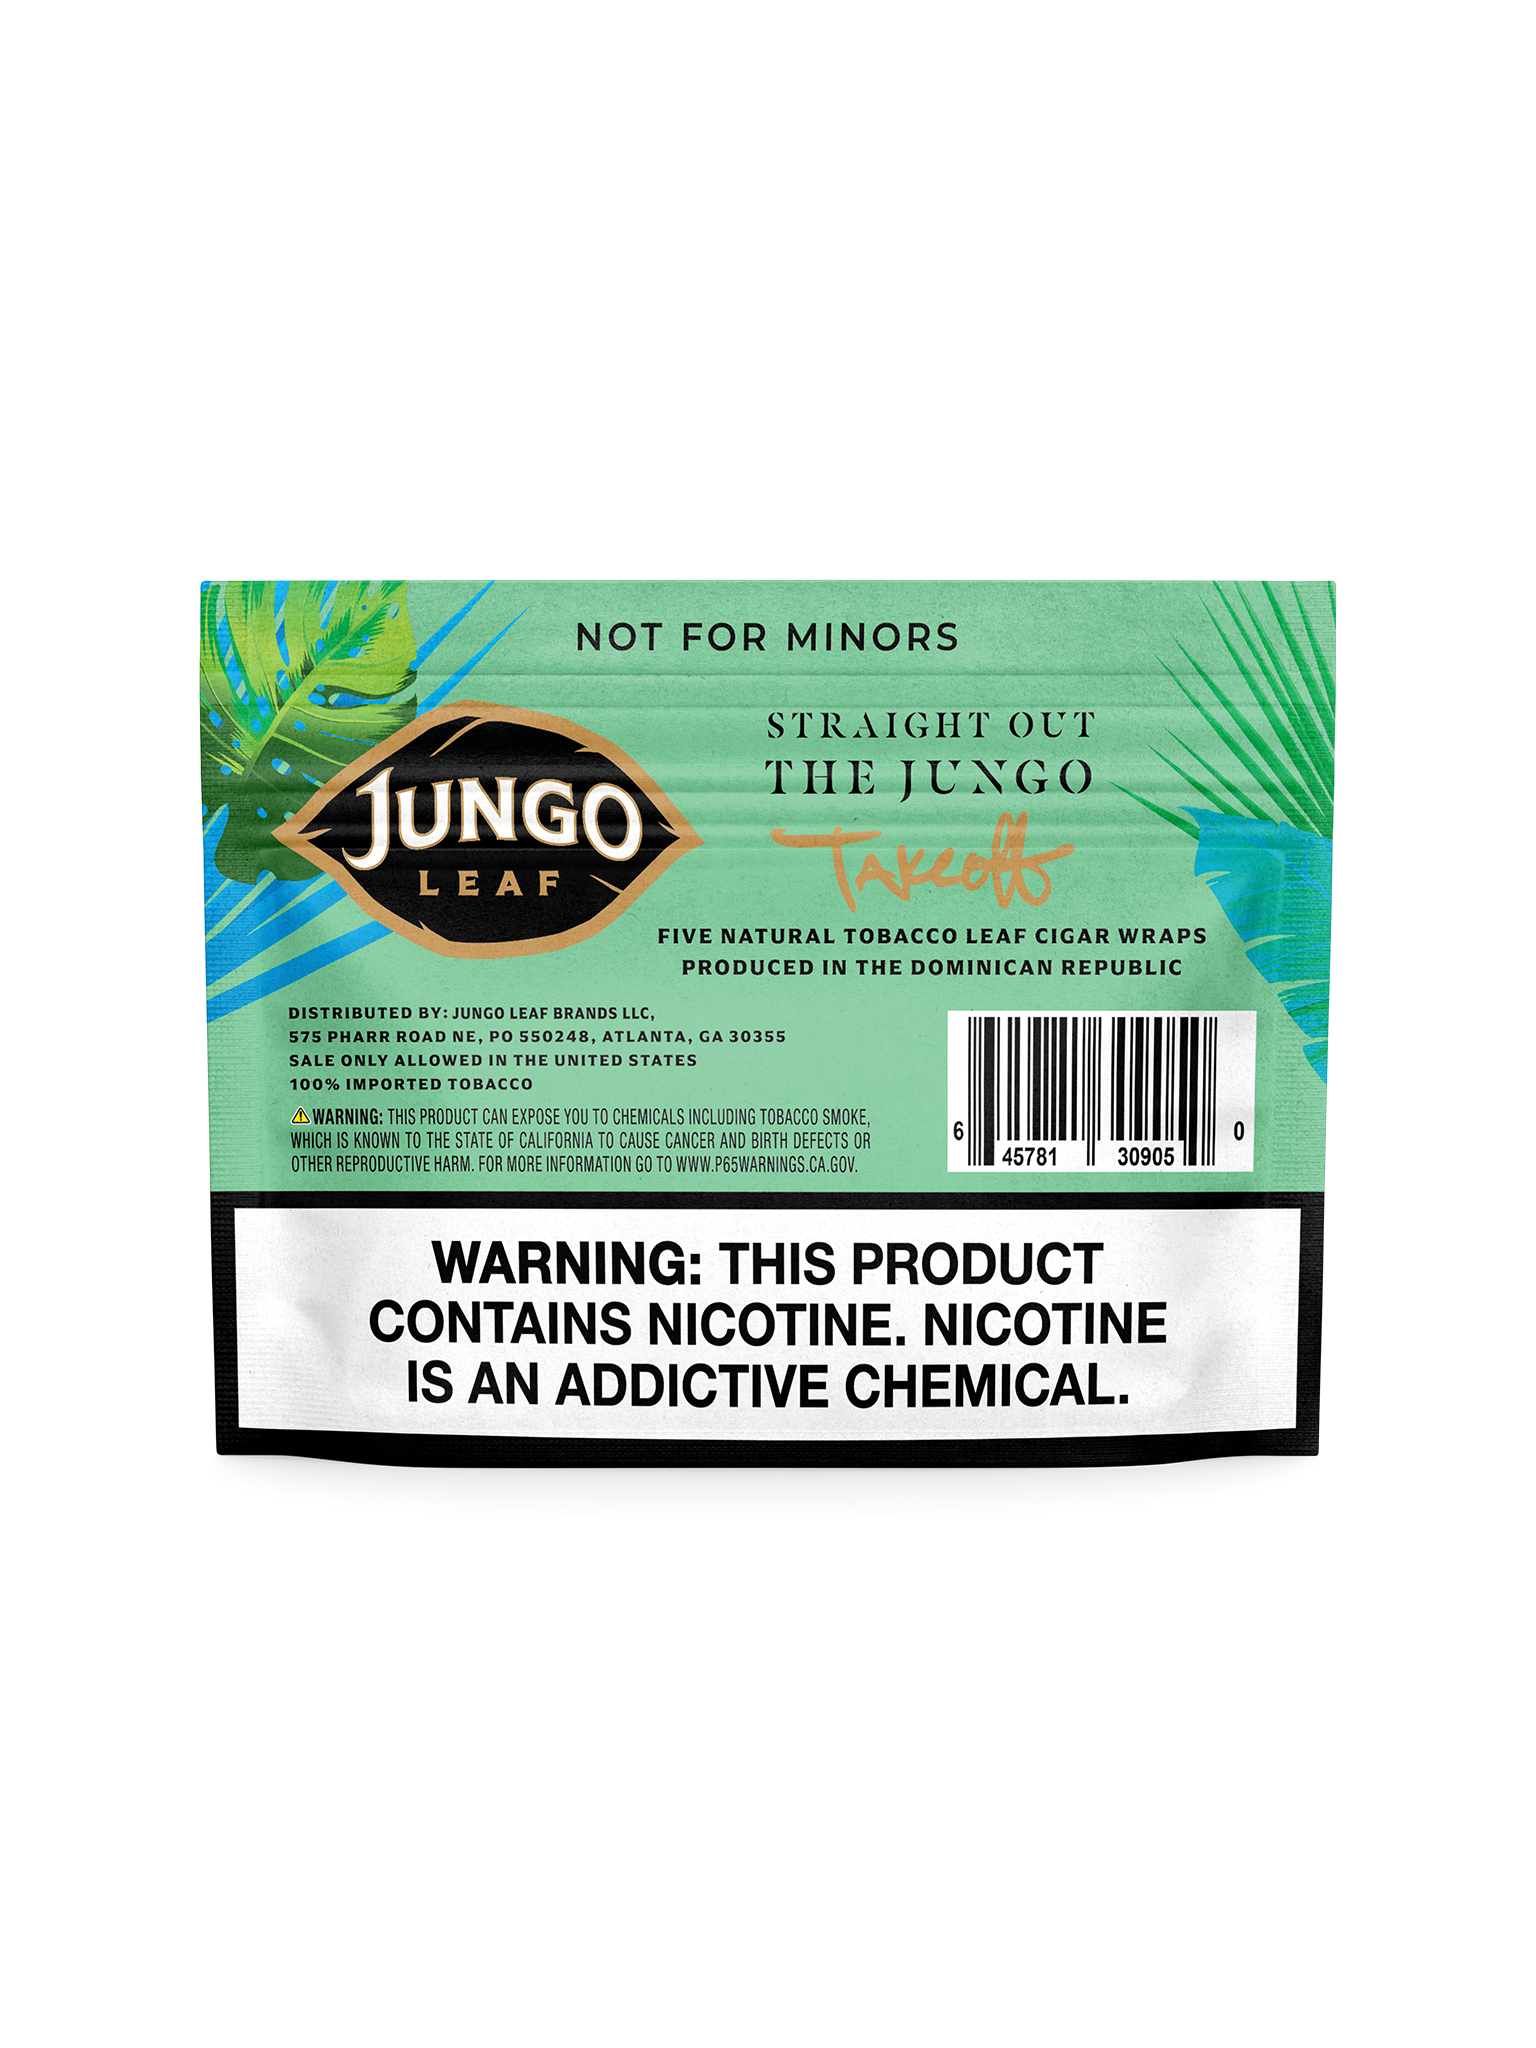 Jungo Leaf Cuts | Mint | Single